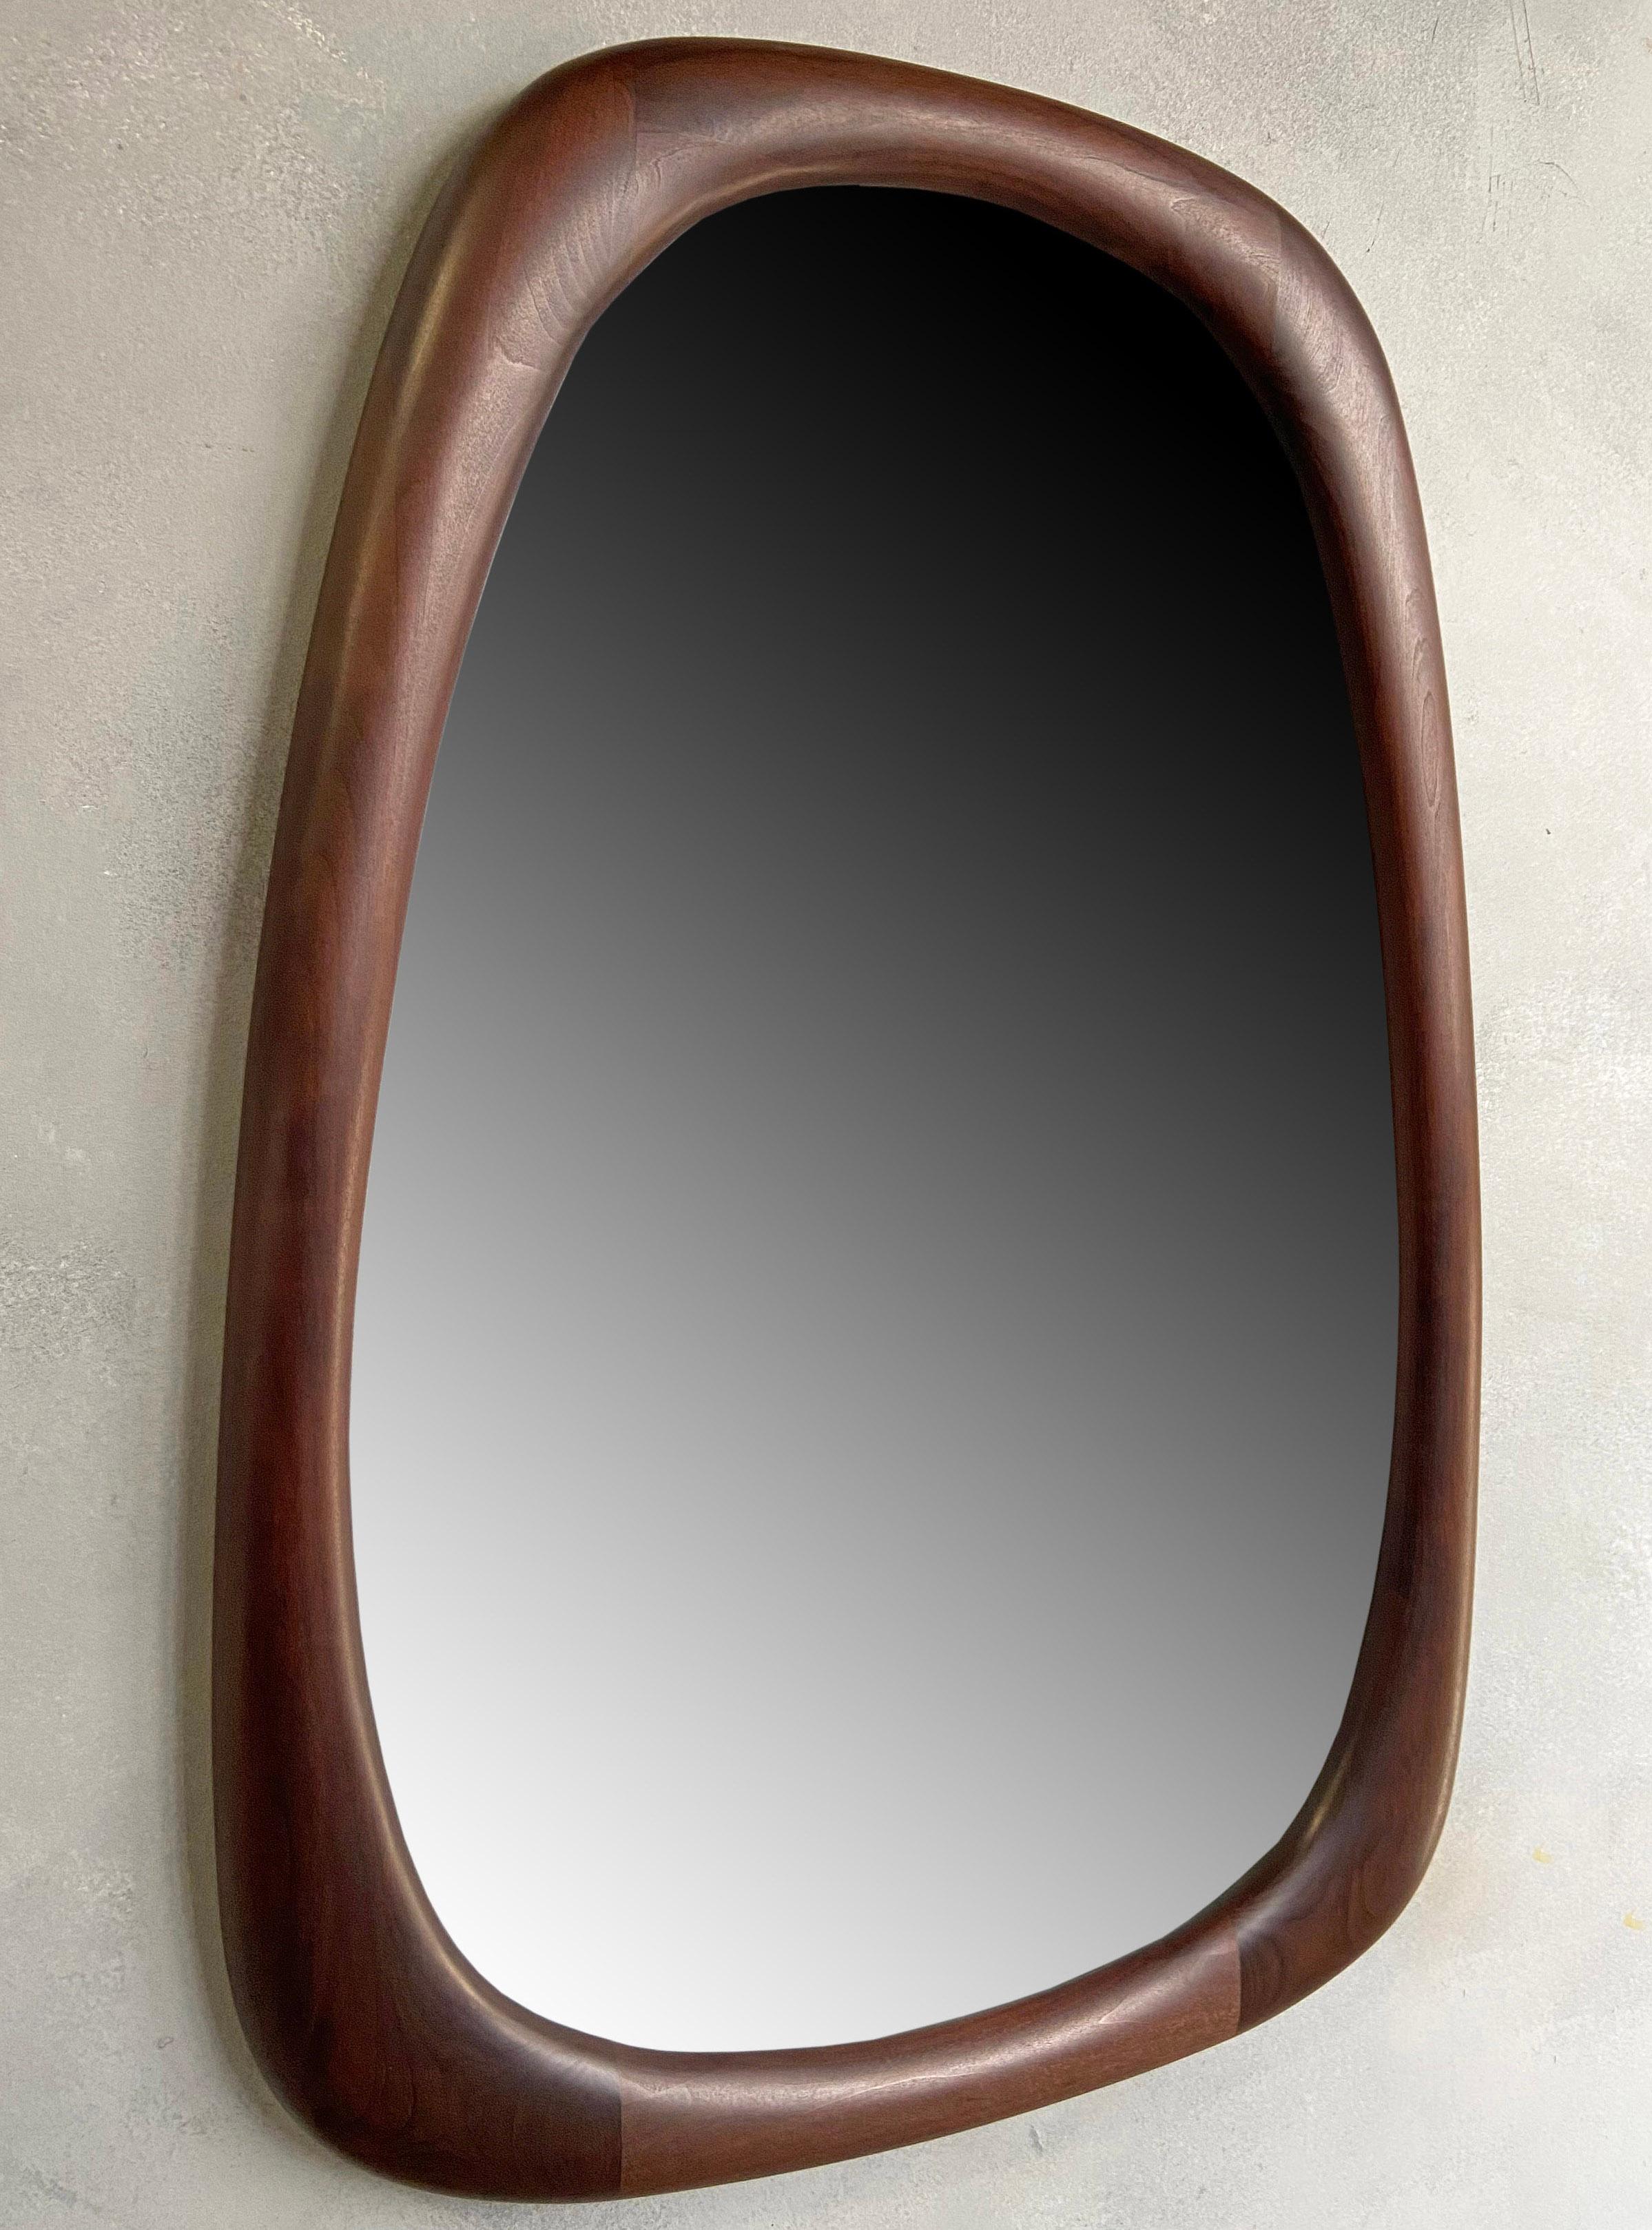 Stunning Mid-Century American Modern Craft Mirror by Dean Santner 4